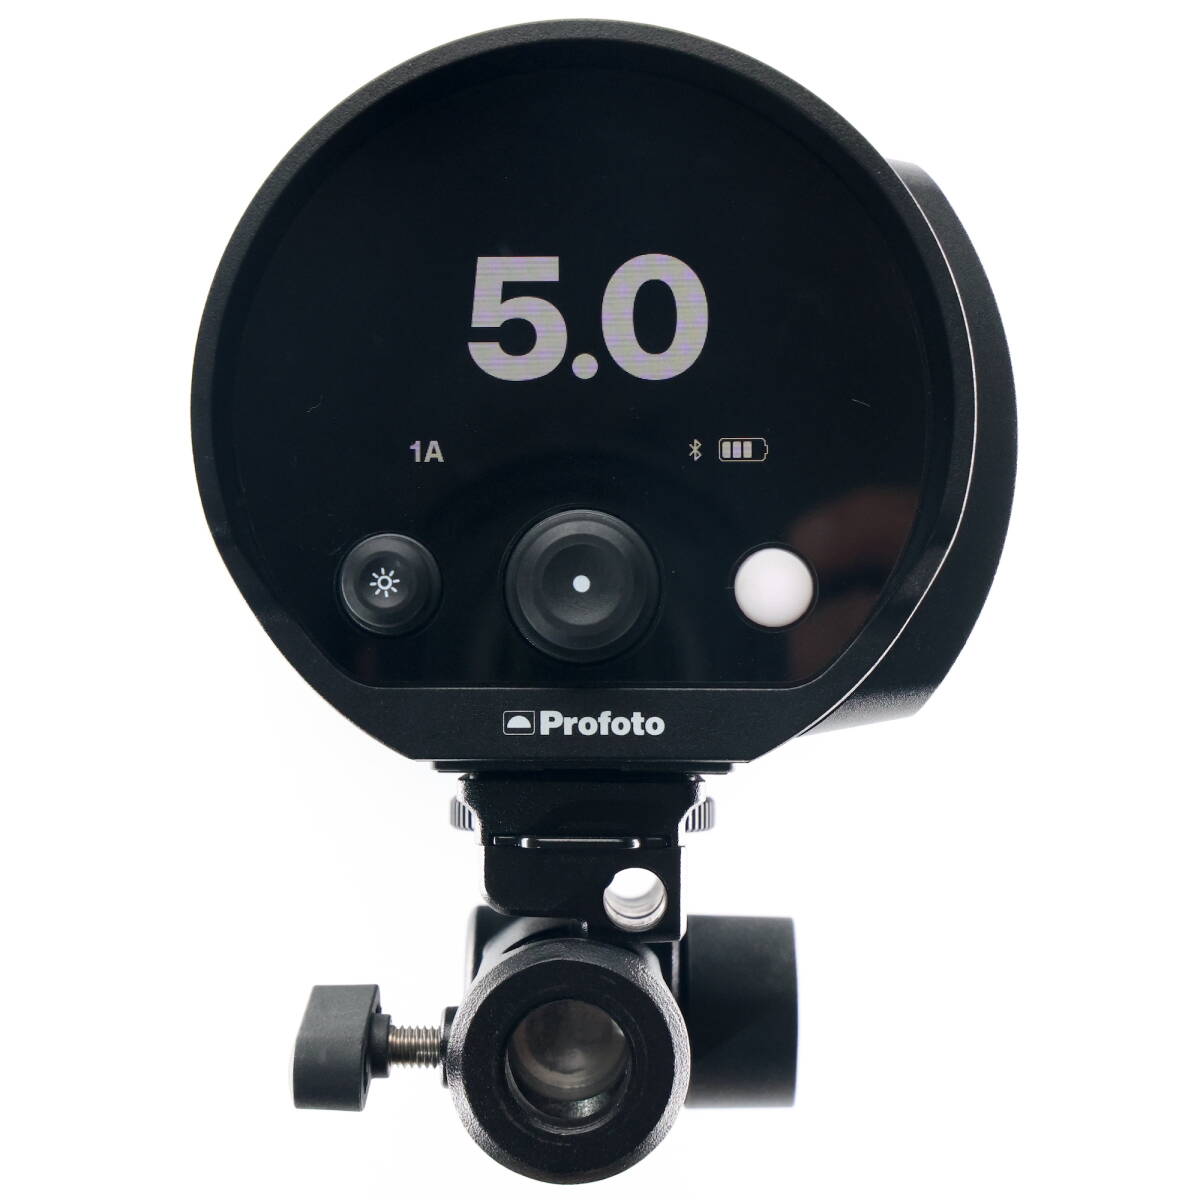 Profoto B10 Pro фото стробоскоп моно свет клейкая пленка имеется 